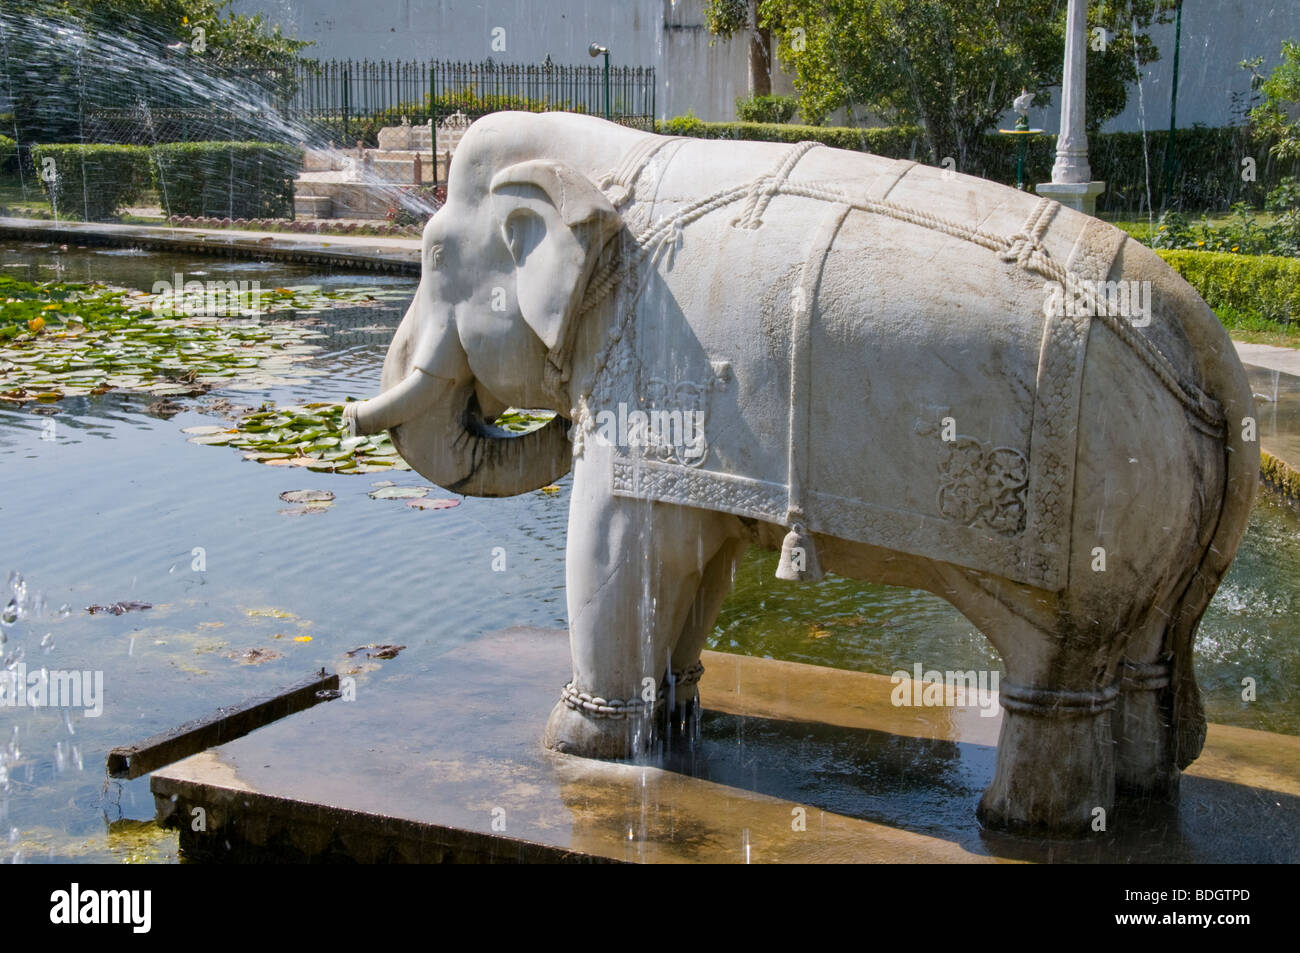 Gärten der Maids Of Honour, vier, Marmor Elefanten bewachen den Lotusteich, Sahelion k Bari, Udaipur, Rajasthan, Indien Stockfoto